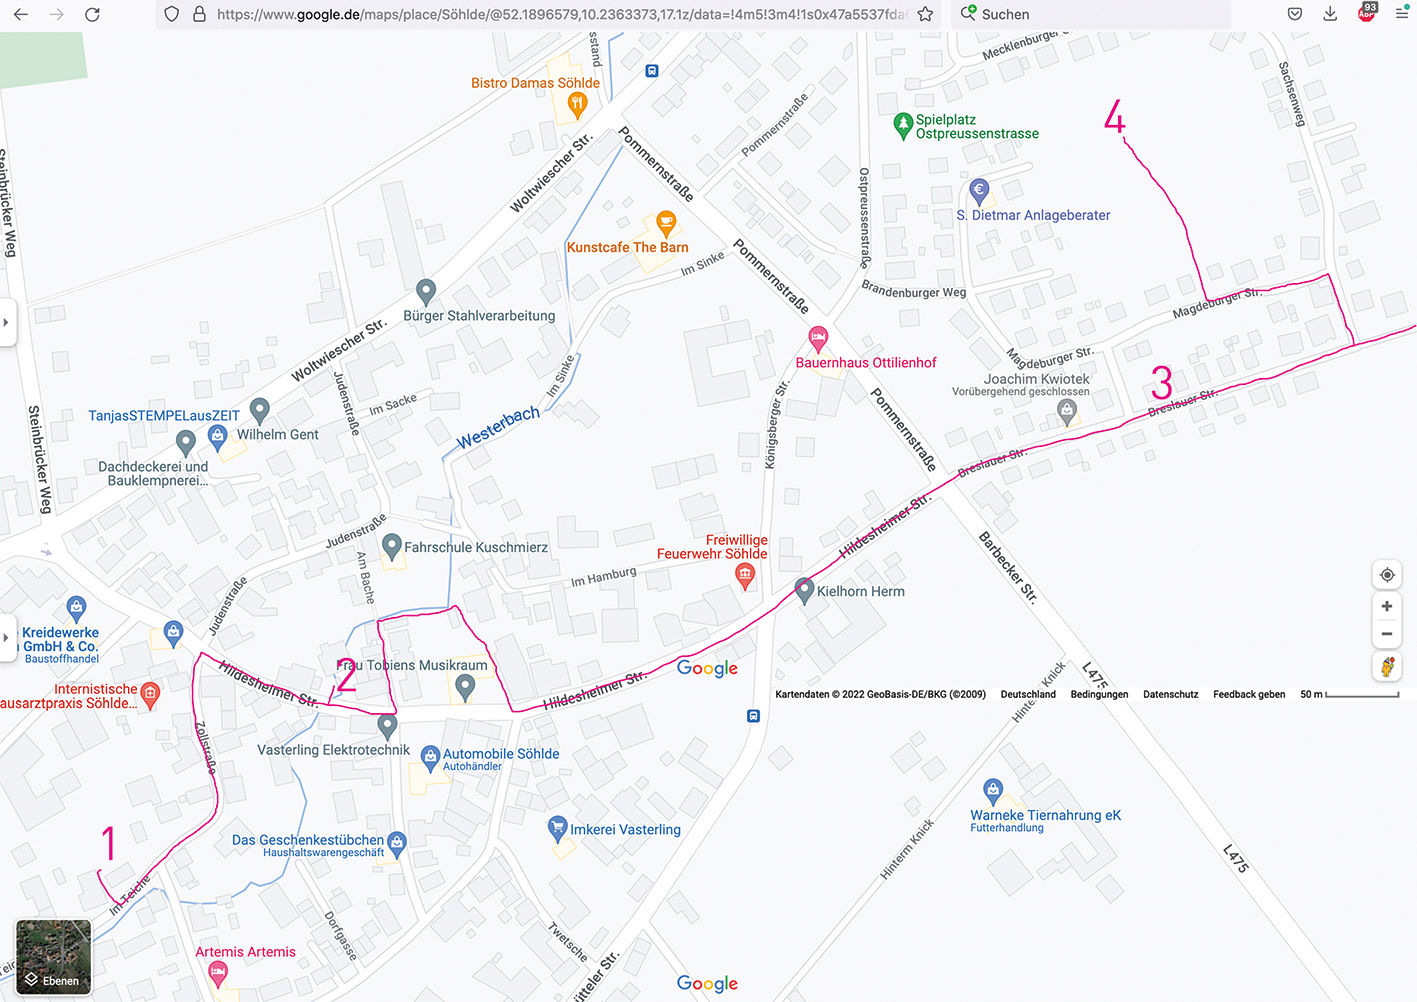 Google-Maps-Karte von Söhlde mit eingezeichnetem Routenverlauf für den Schwarzplanspaziergang